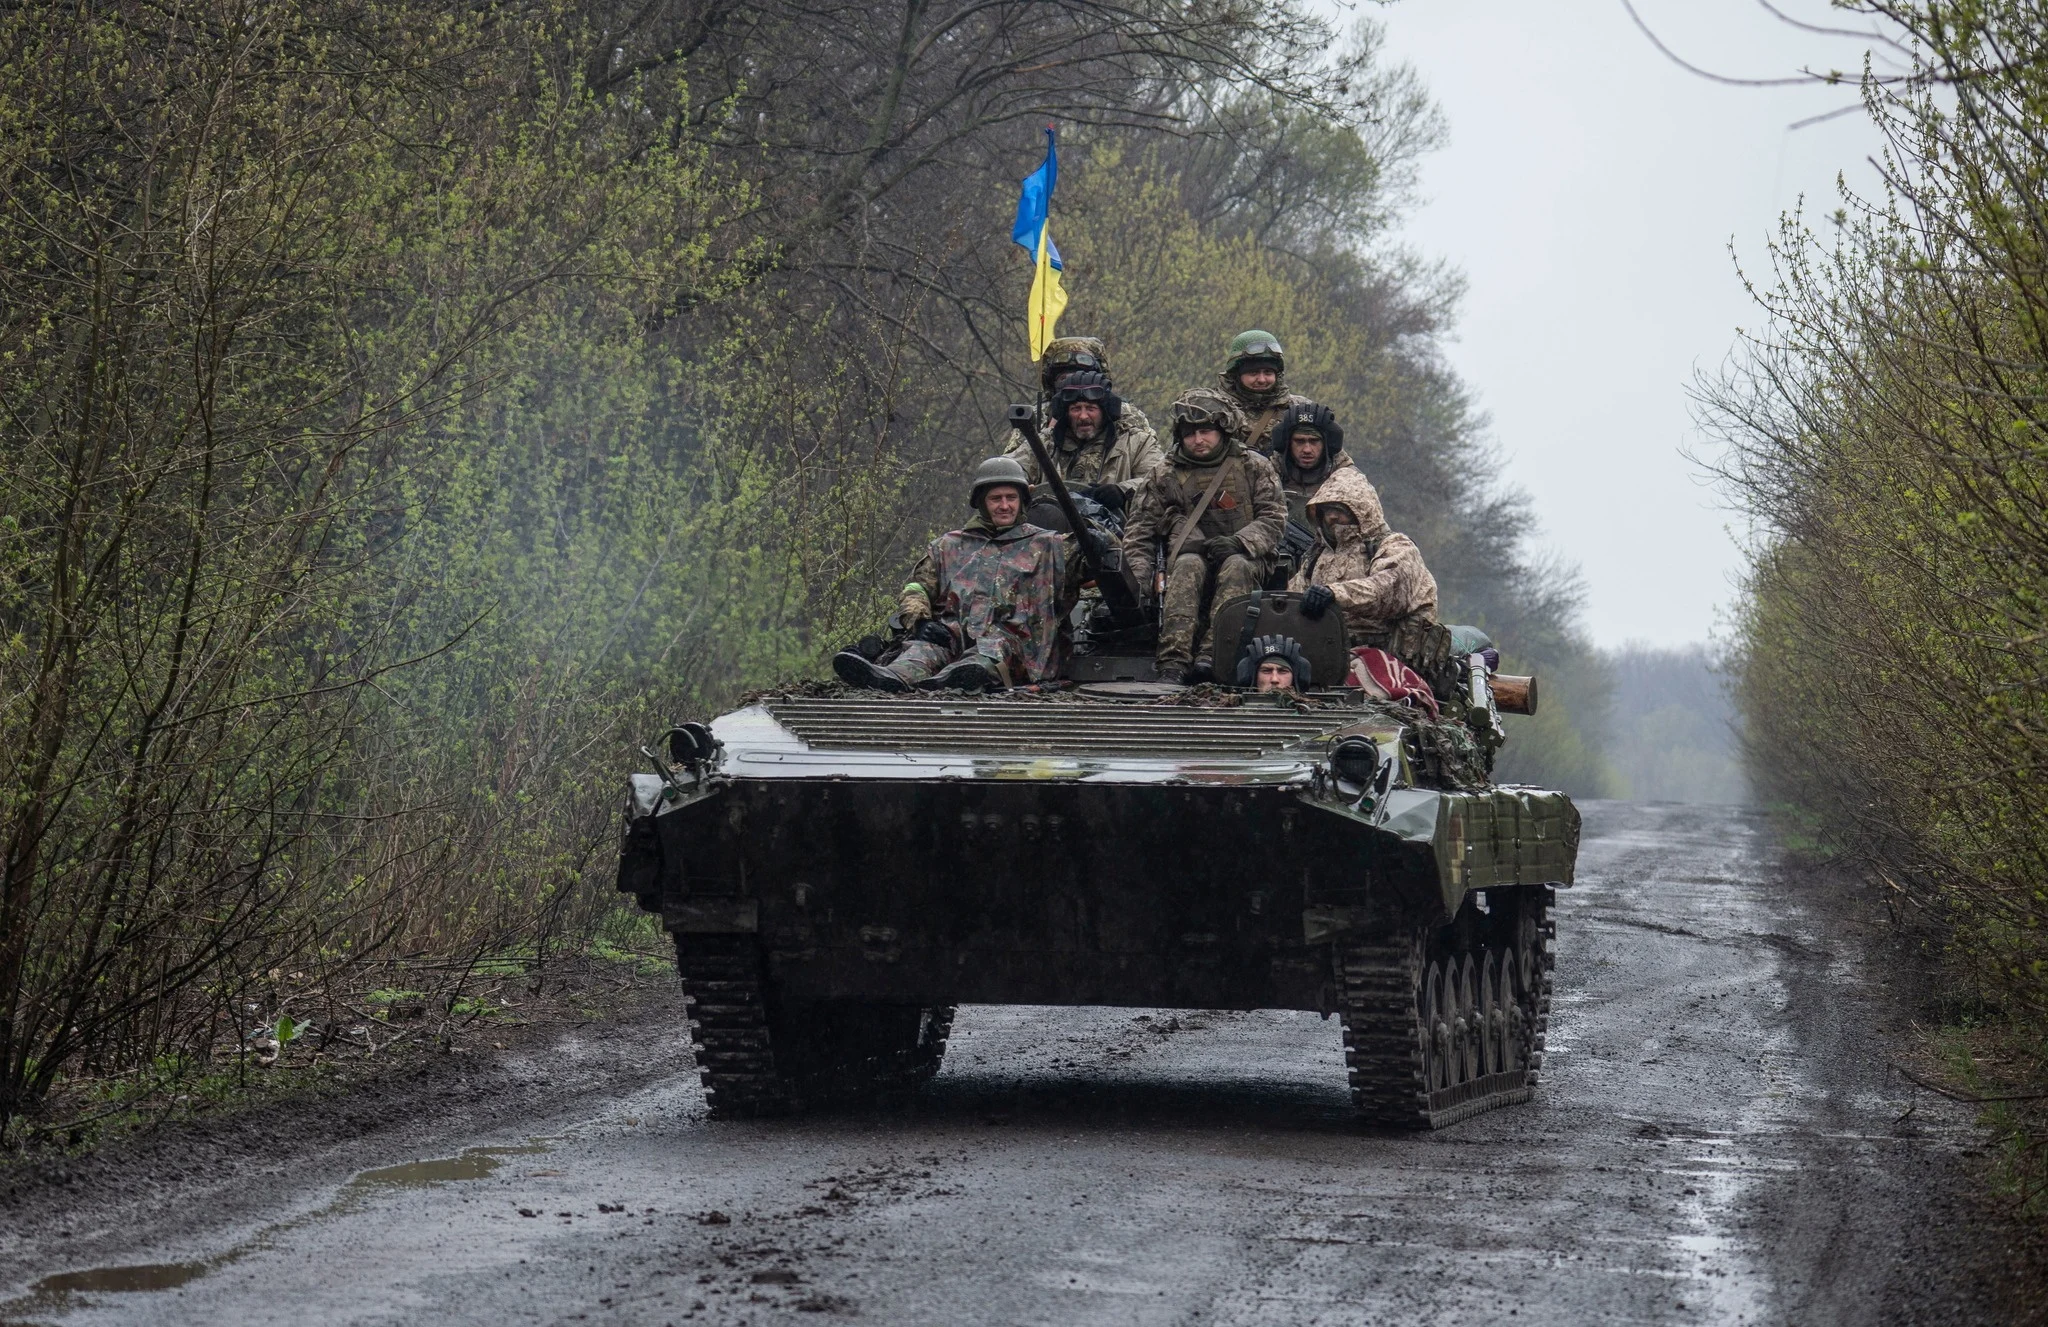 חיילים אוקראינים במזרח המדינה סמוך לגבול הרוסי